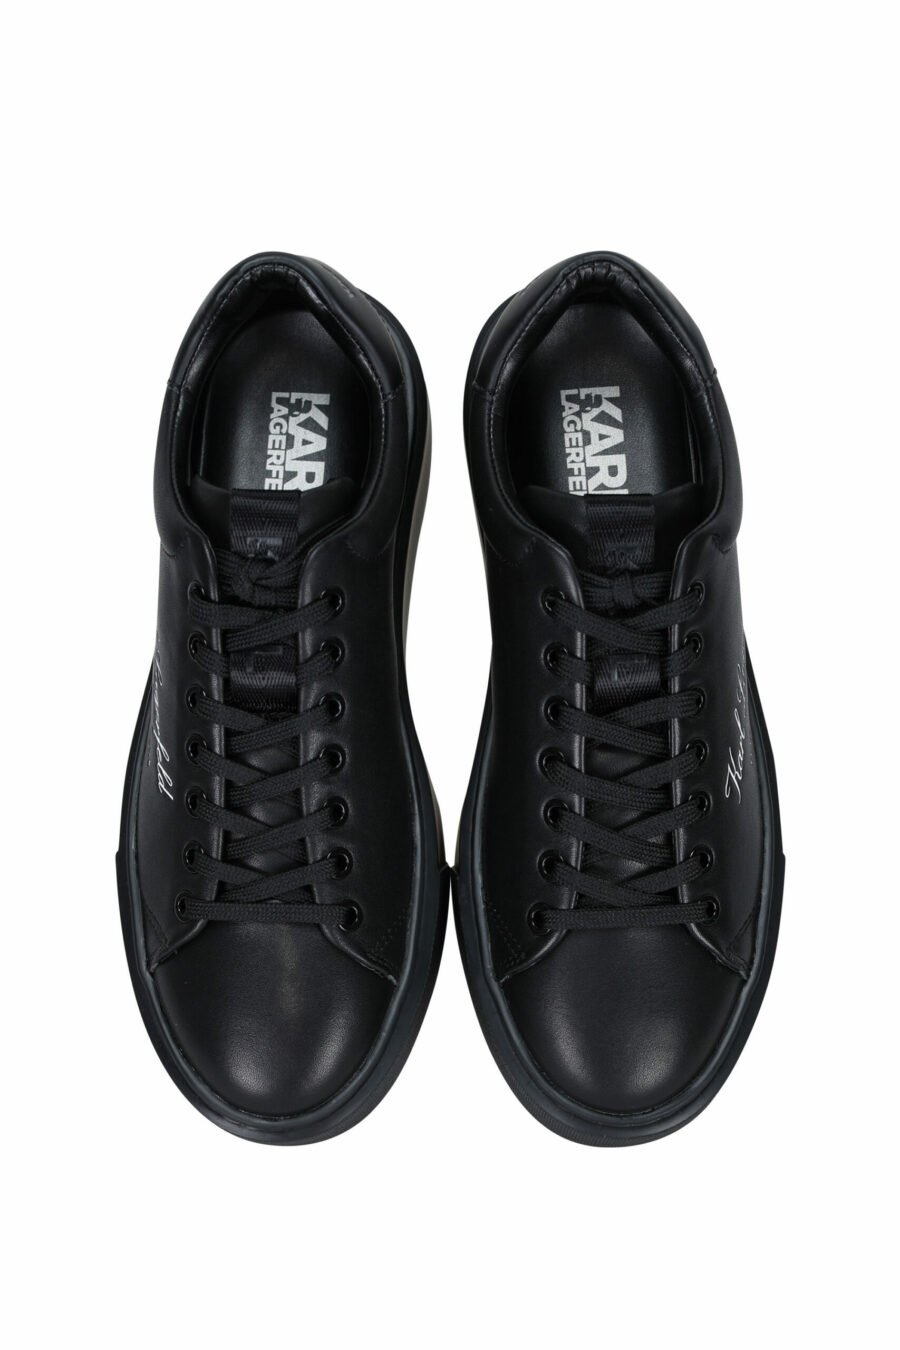 Zapatillas negras " maxi kup" con logo firma blanco y suela negra - 5059529325885 4 scaled